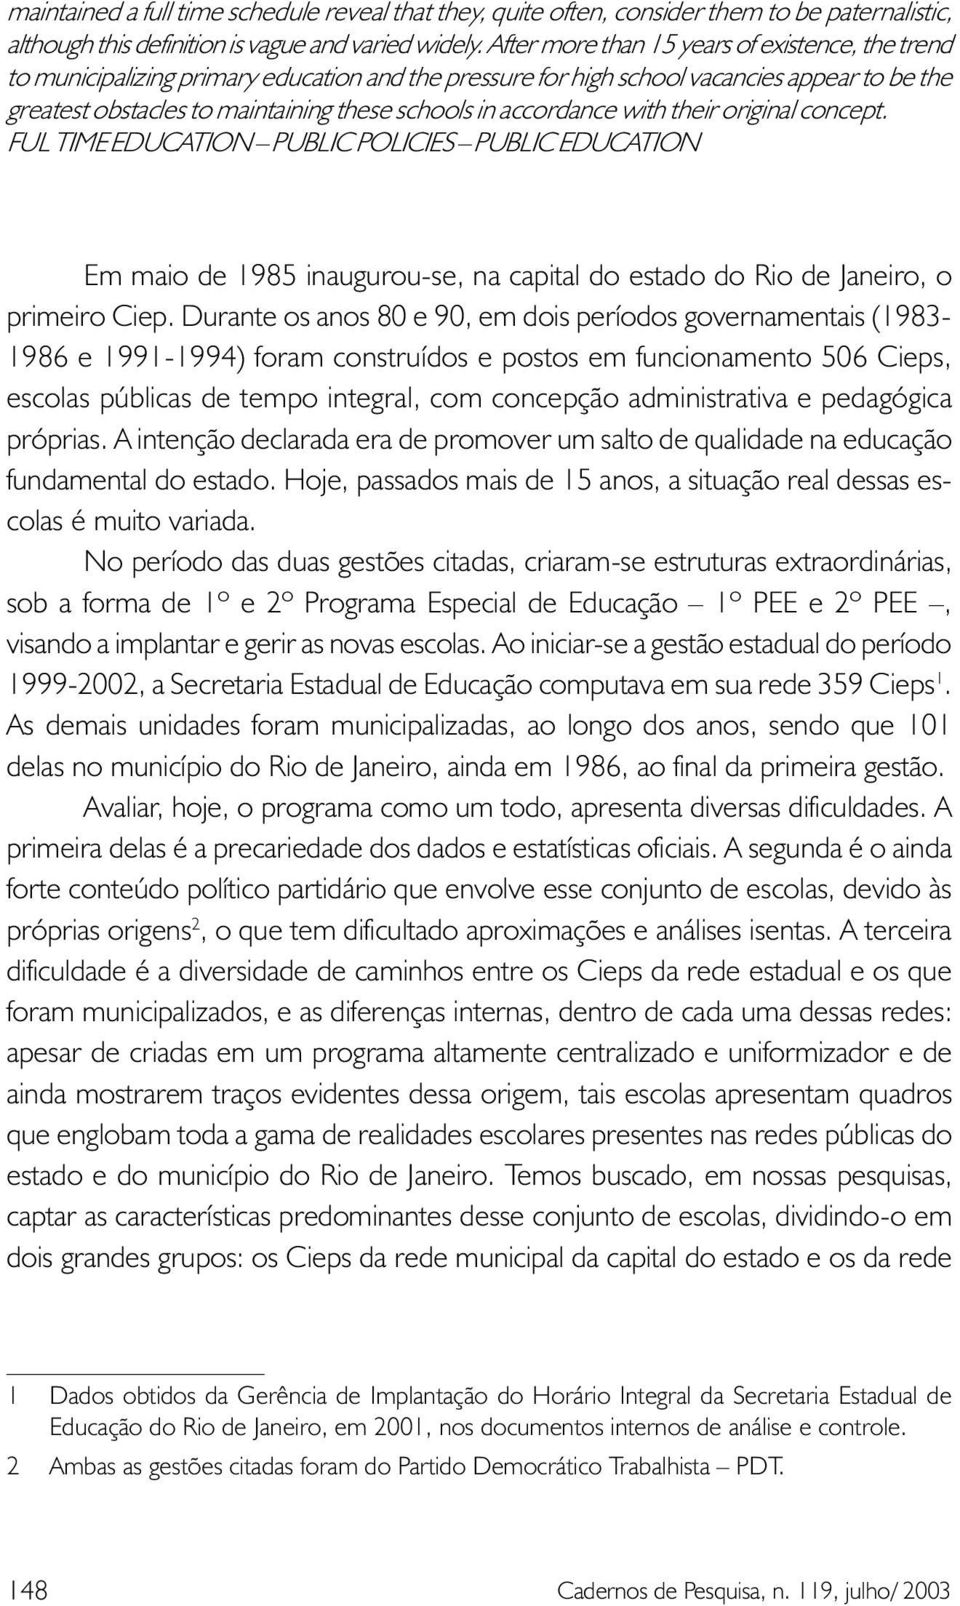 accordance with their original concept. FUL TIME EDUCATION PUBLIC POLICIES PUBLIC EDUCATION Em maio de 1985 inaugurou-se, na capital do estado do Rio de Janeiro, o primeiro Ciep.